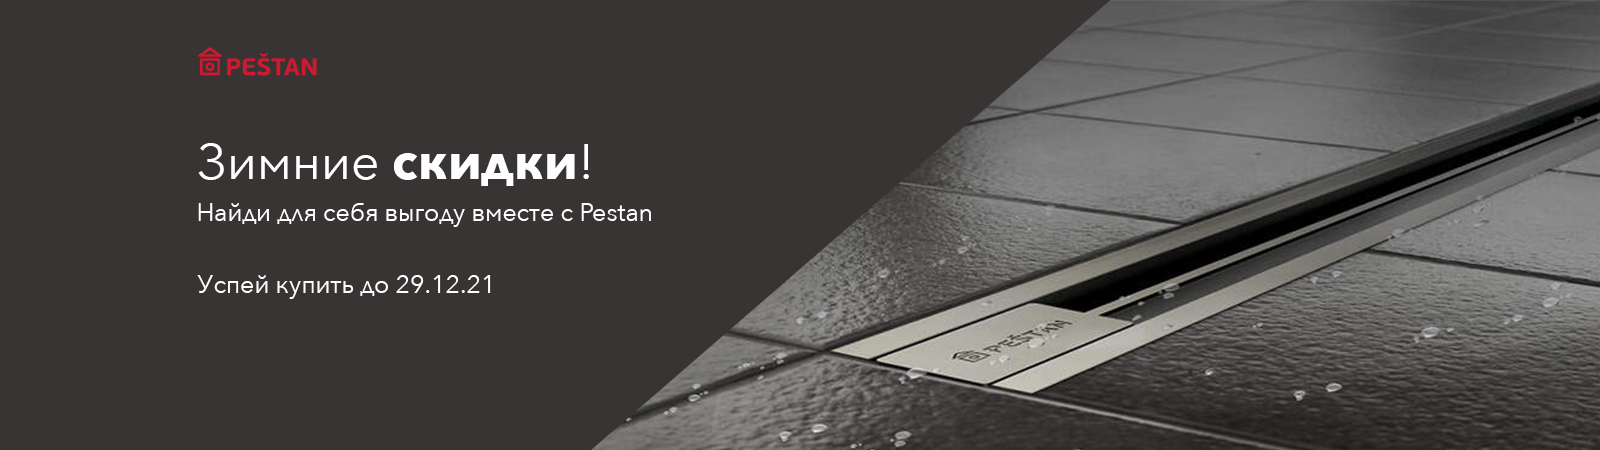 Зимние скидки на бренд Pestan